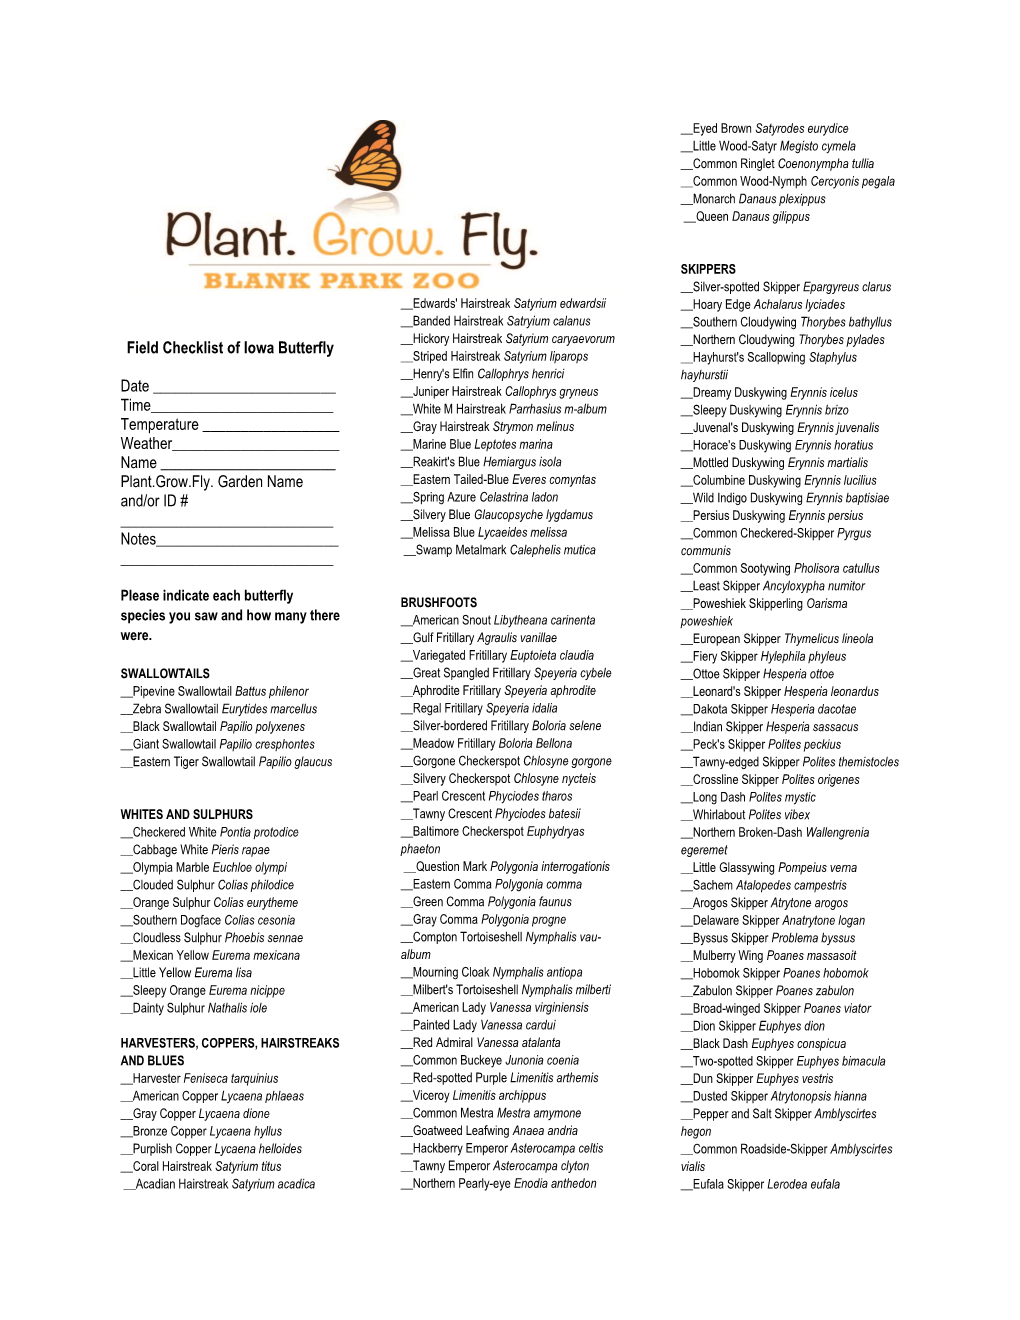 Field Checklist of Iowa Butterfly Date